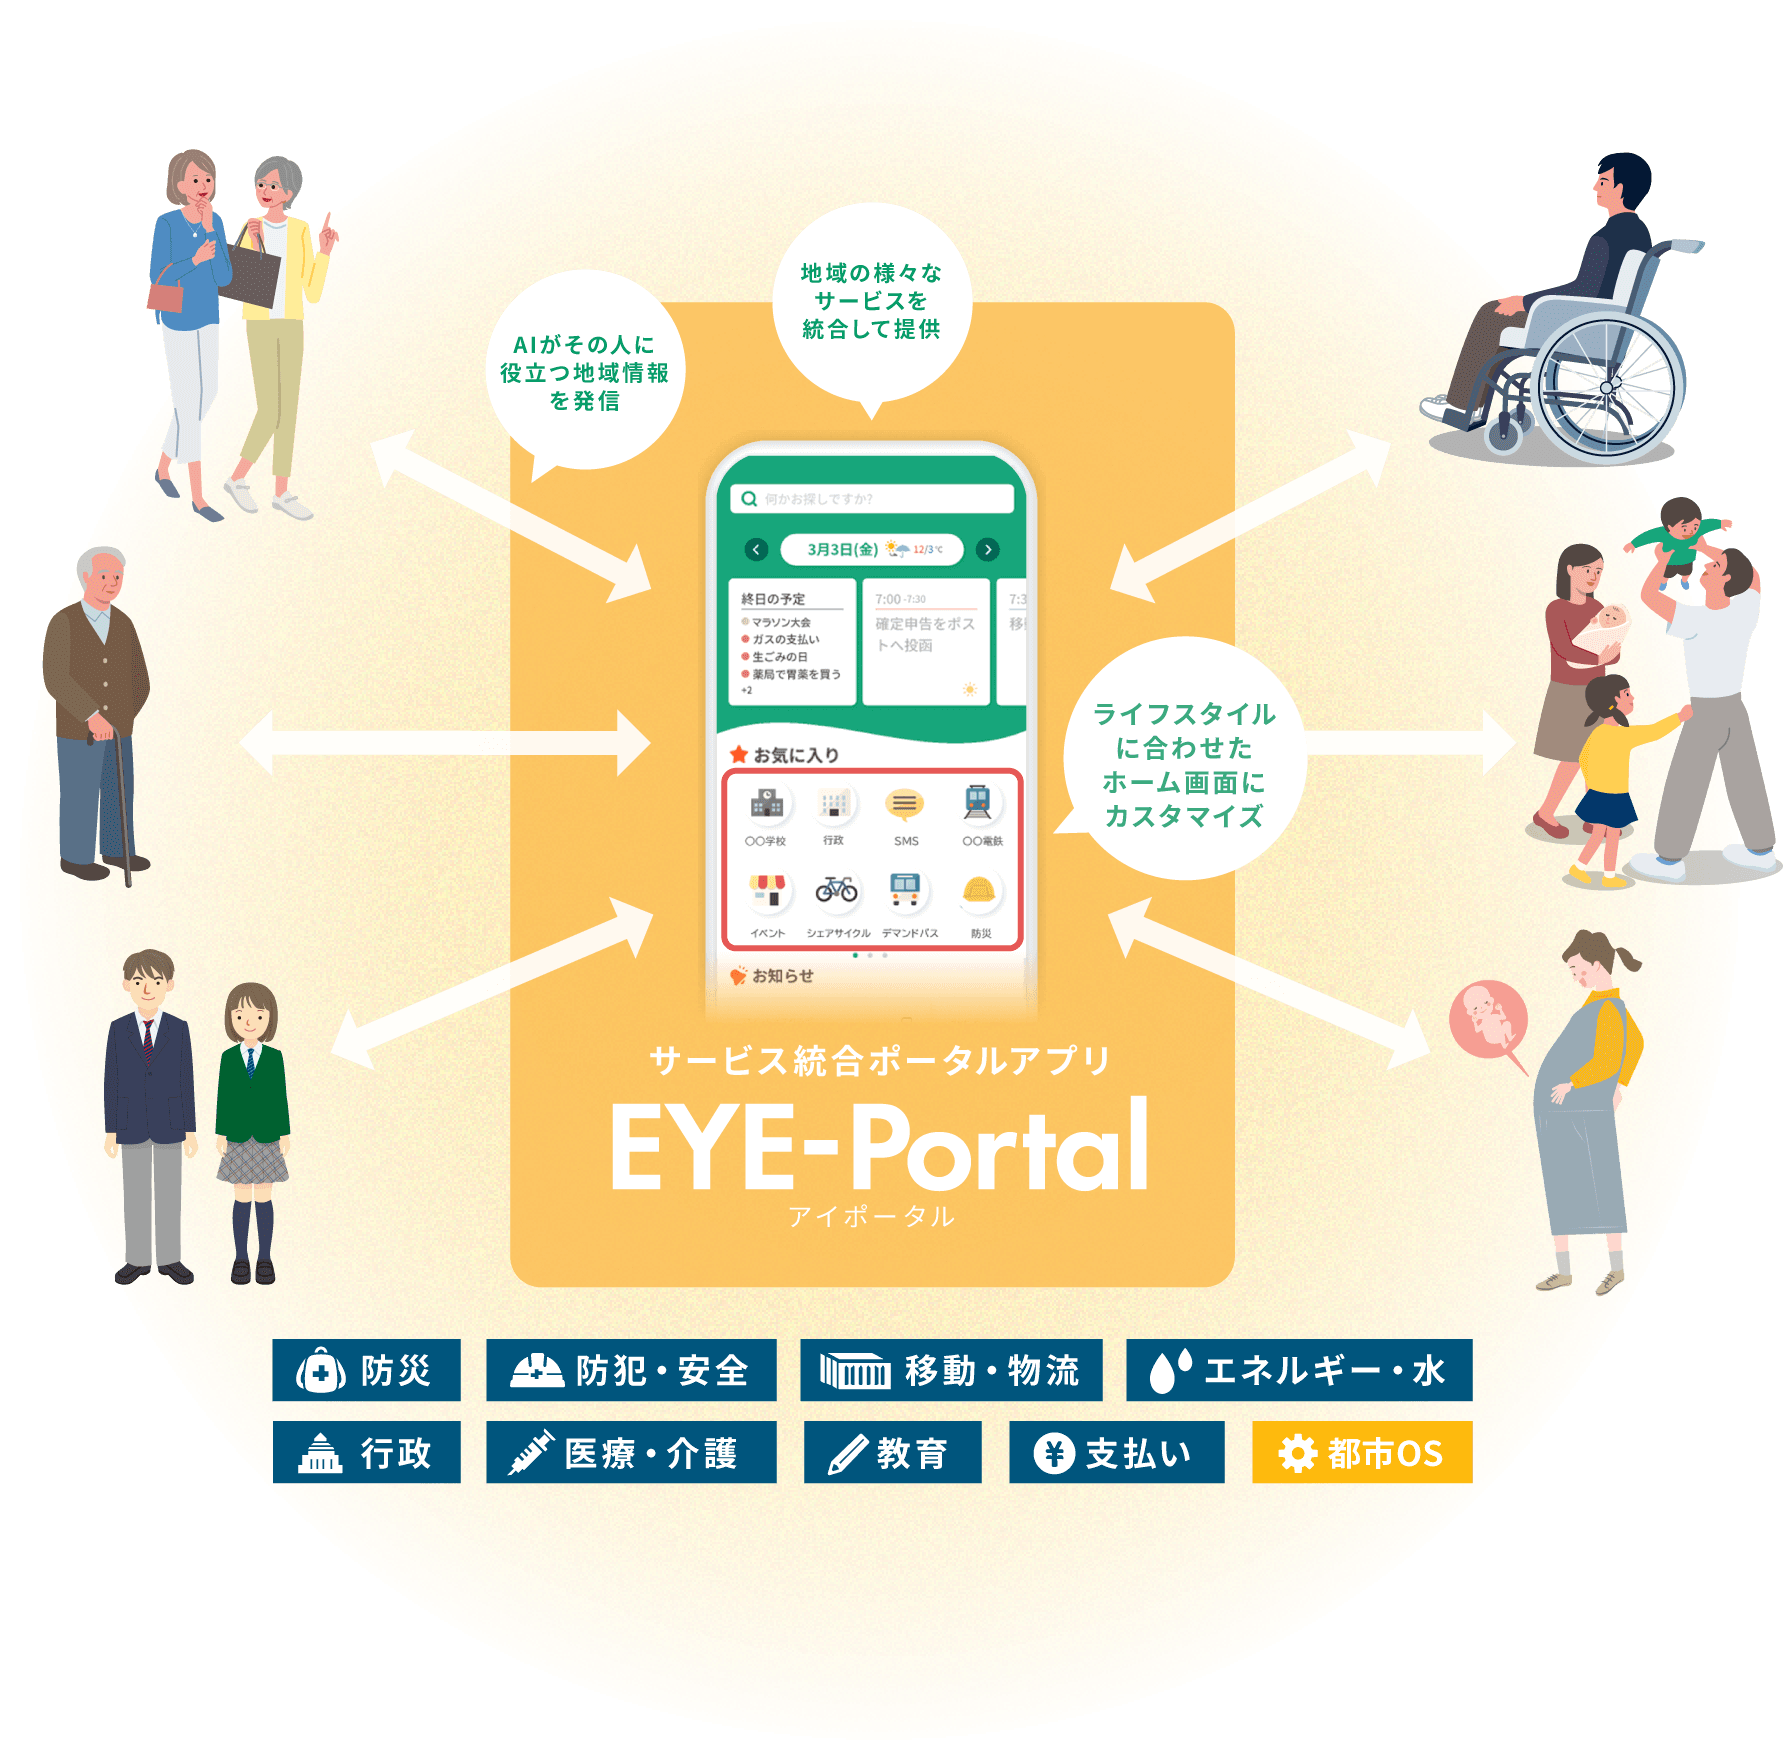 EYE-Portalは、様々なアプリを連携・融合し、生活者ひとりひとりに最適なサービスをオールインワンで利用できるアプリです。